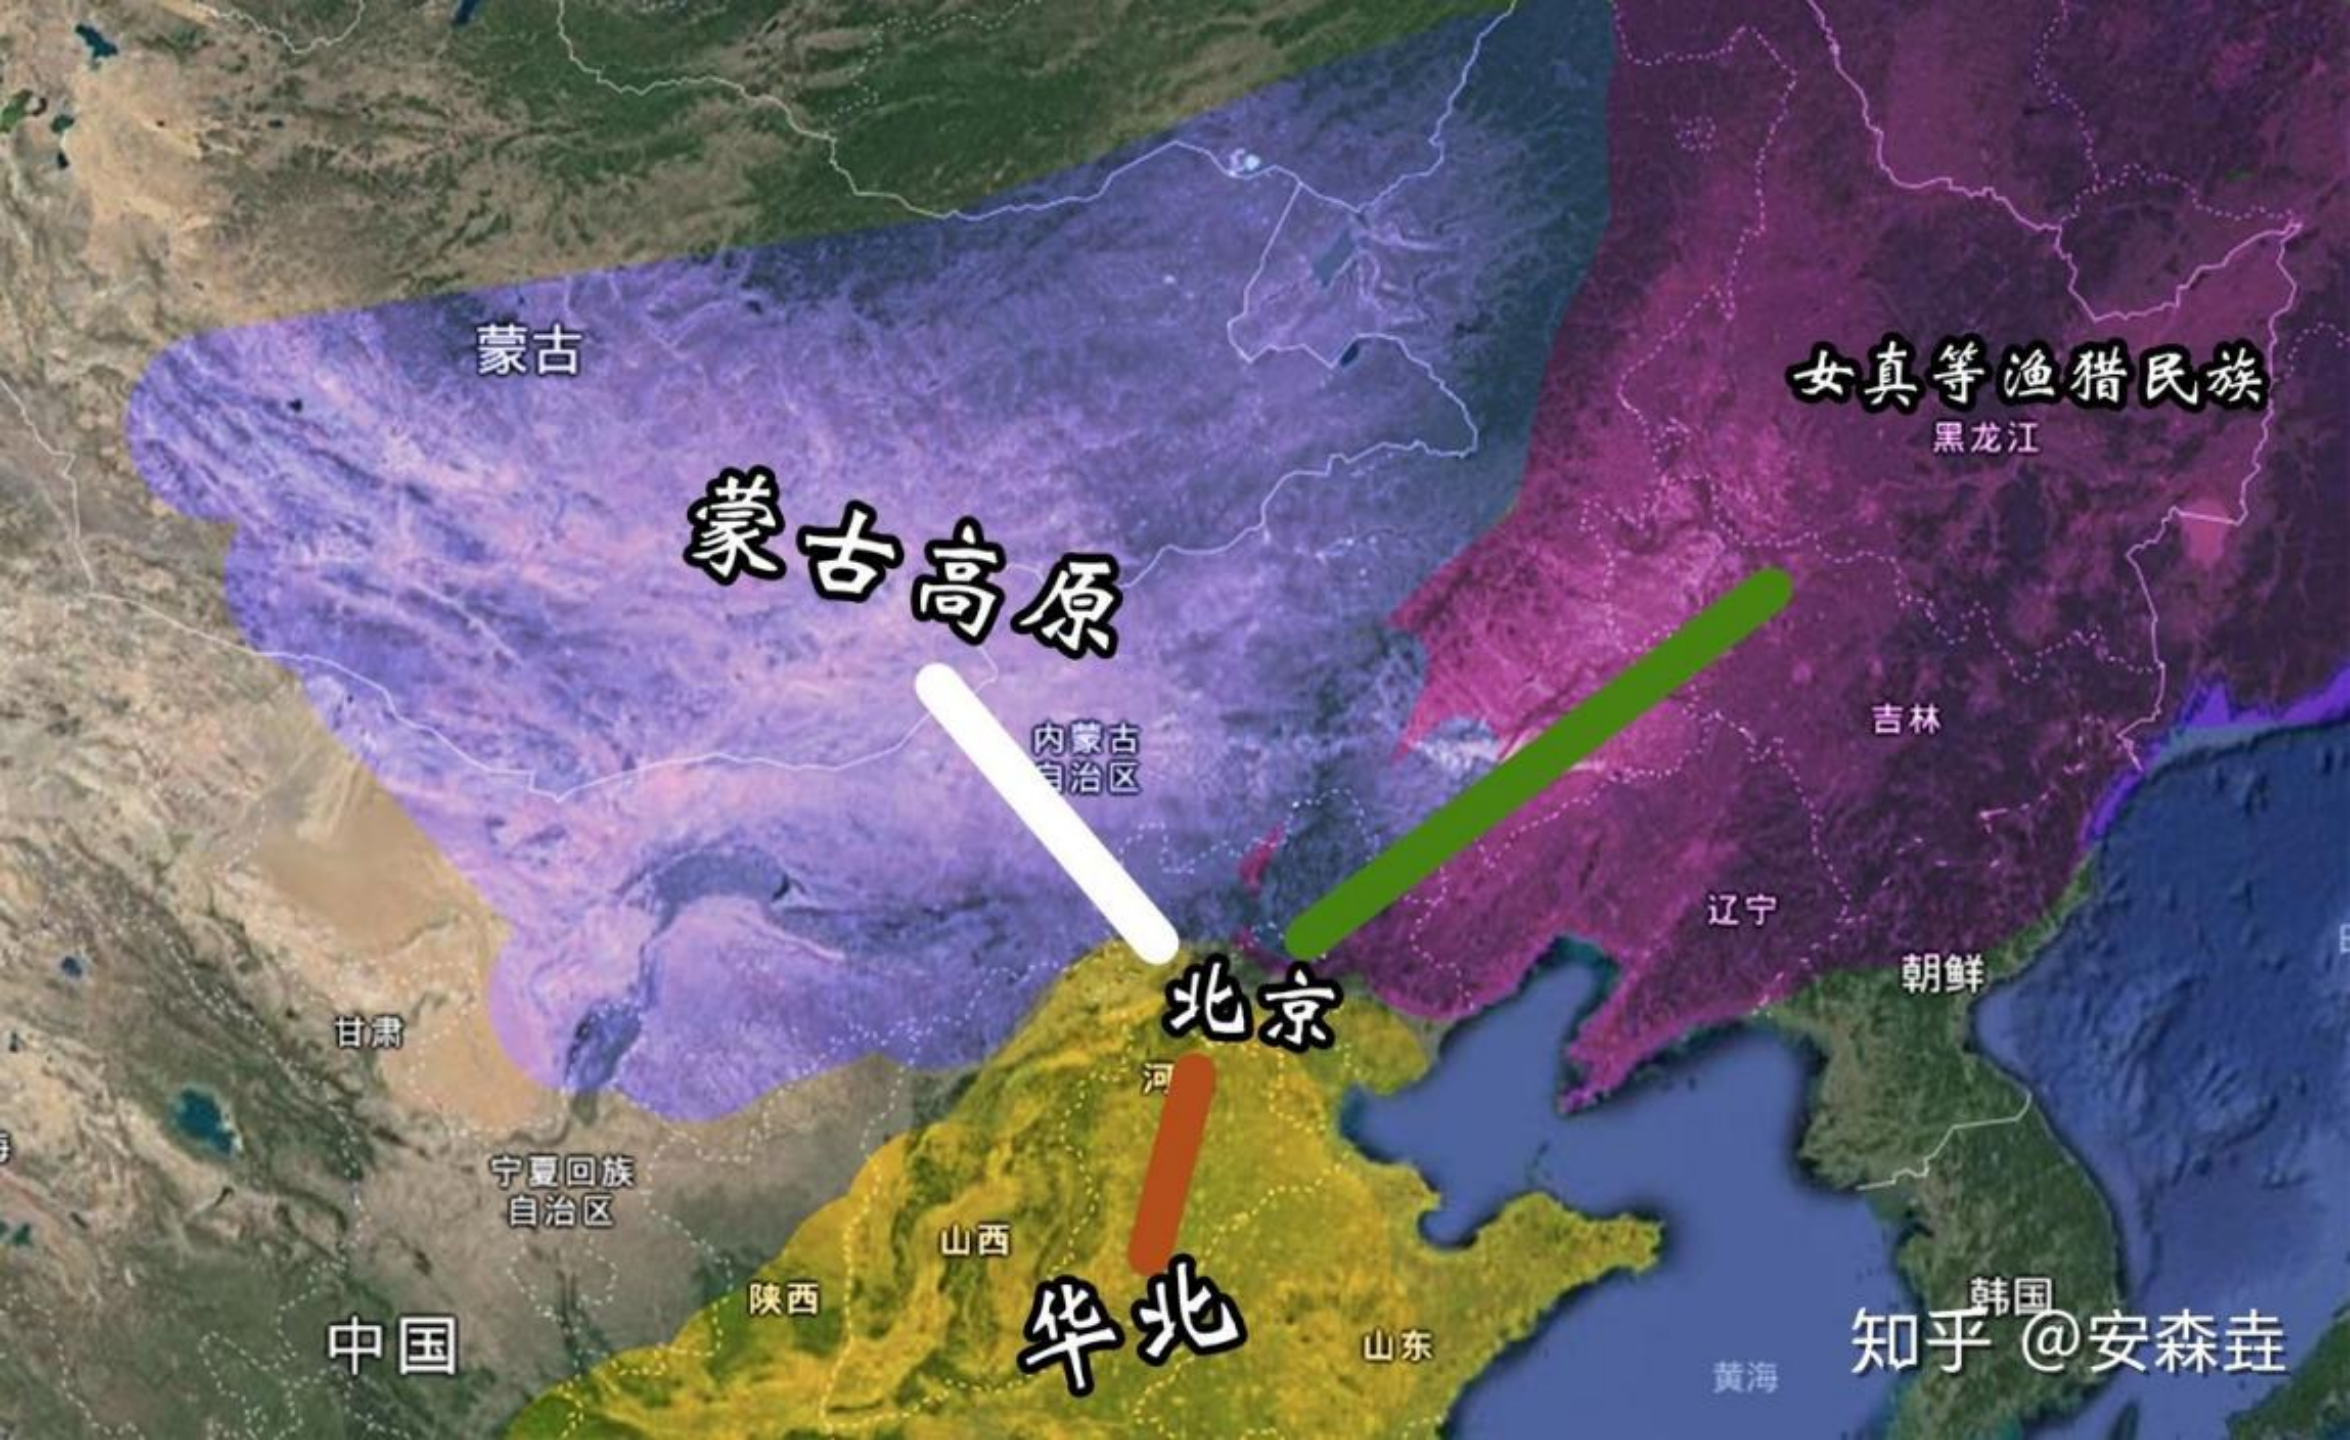 图 35：北京周边区域示意图